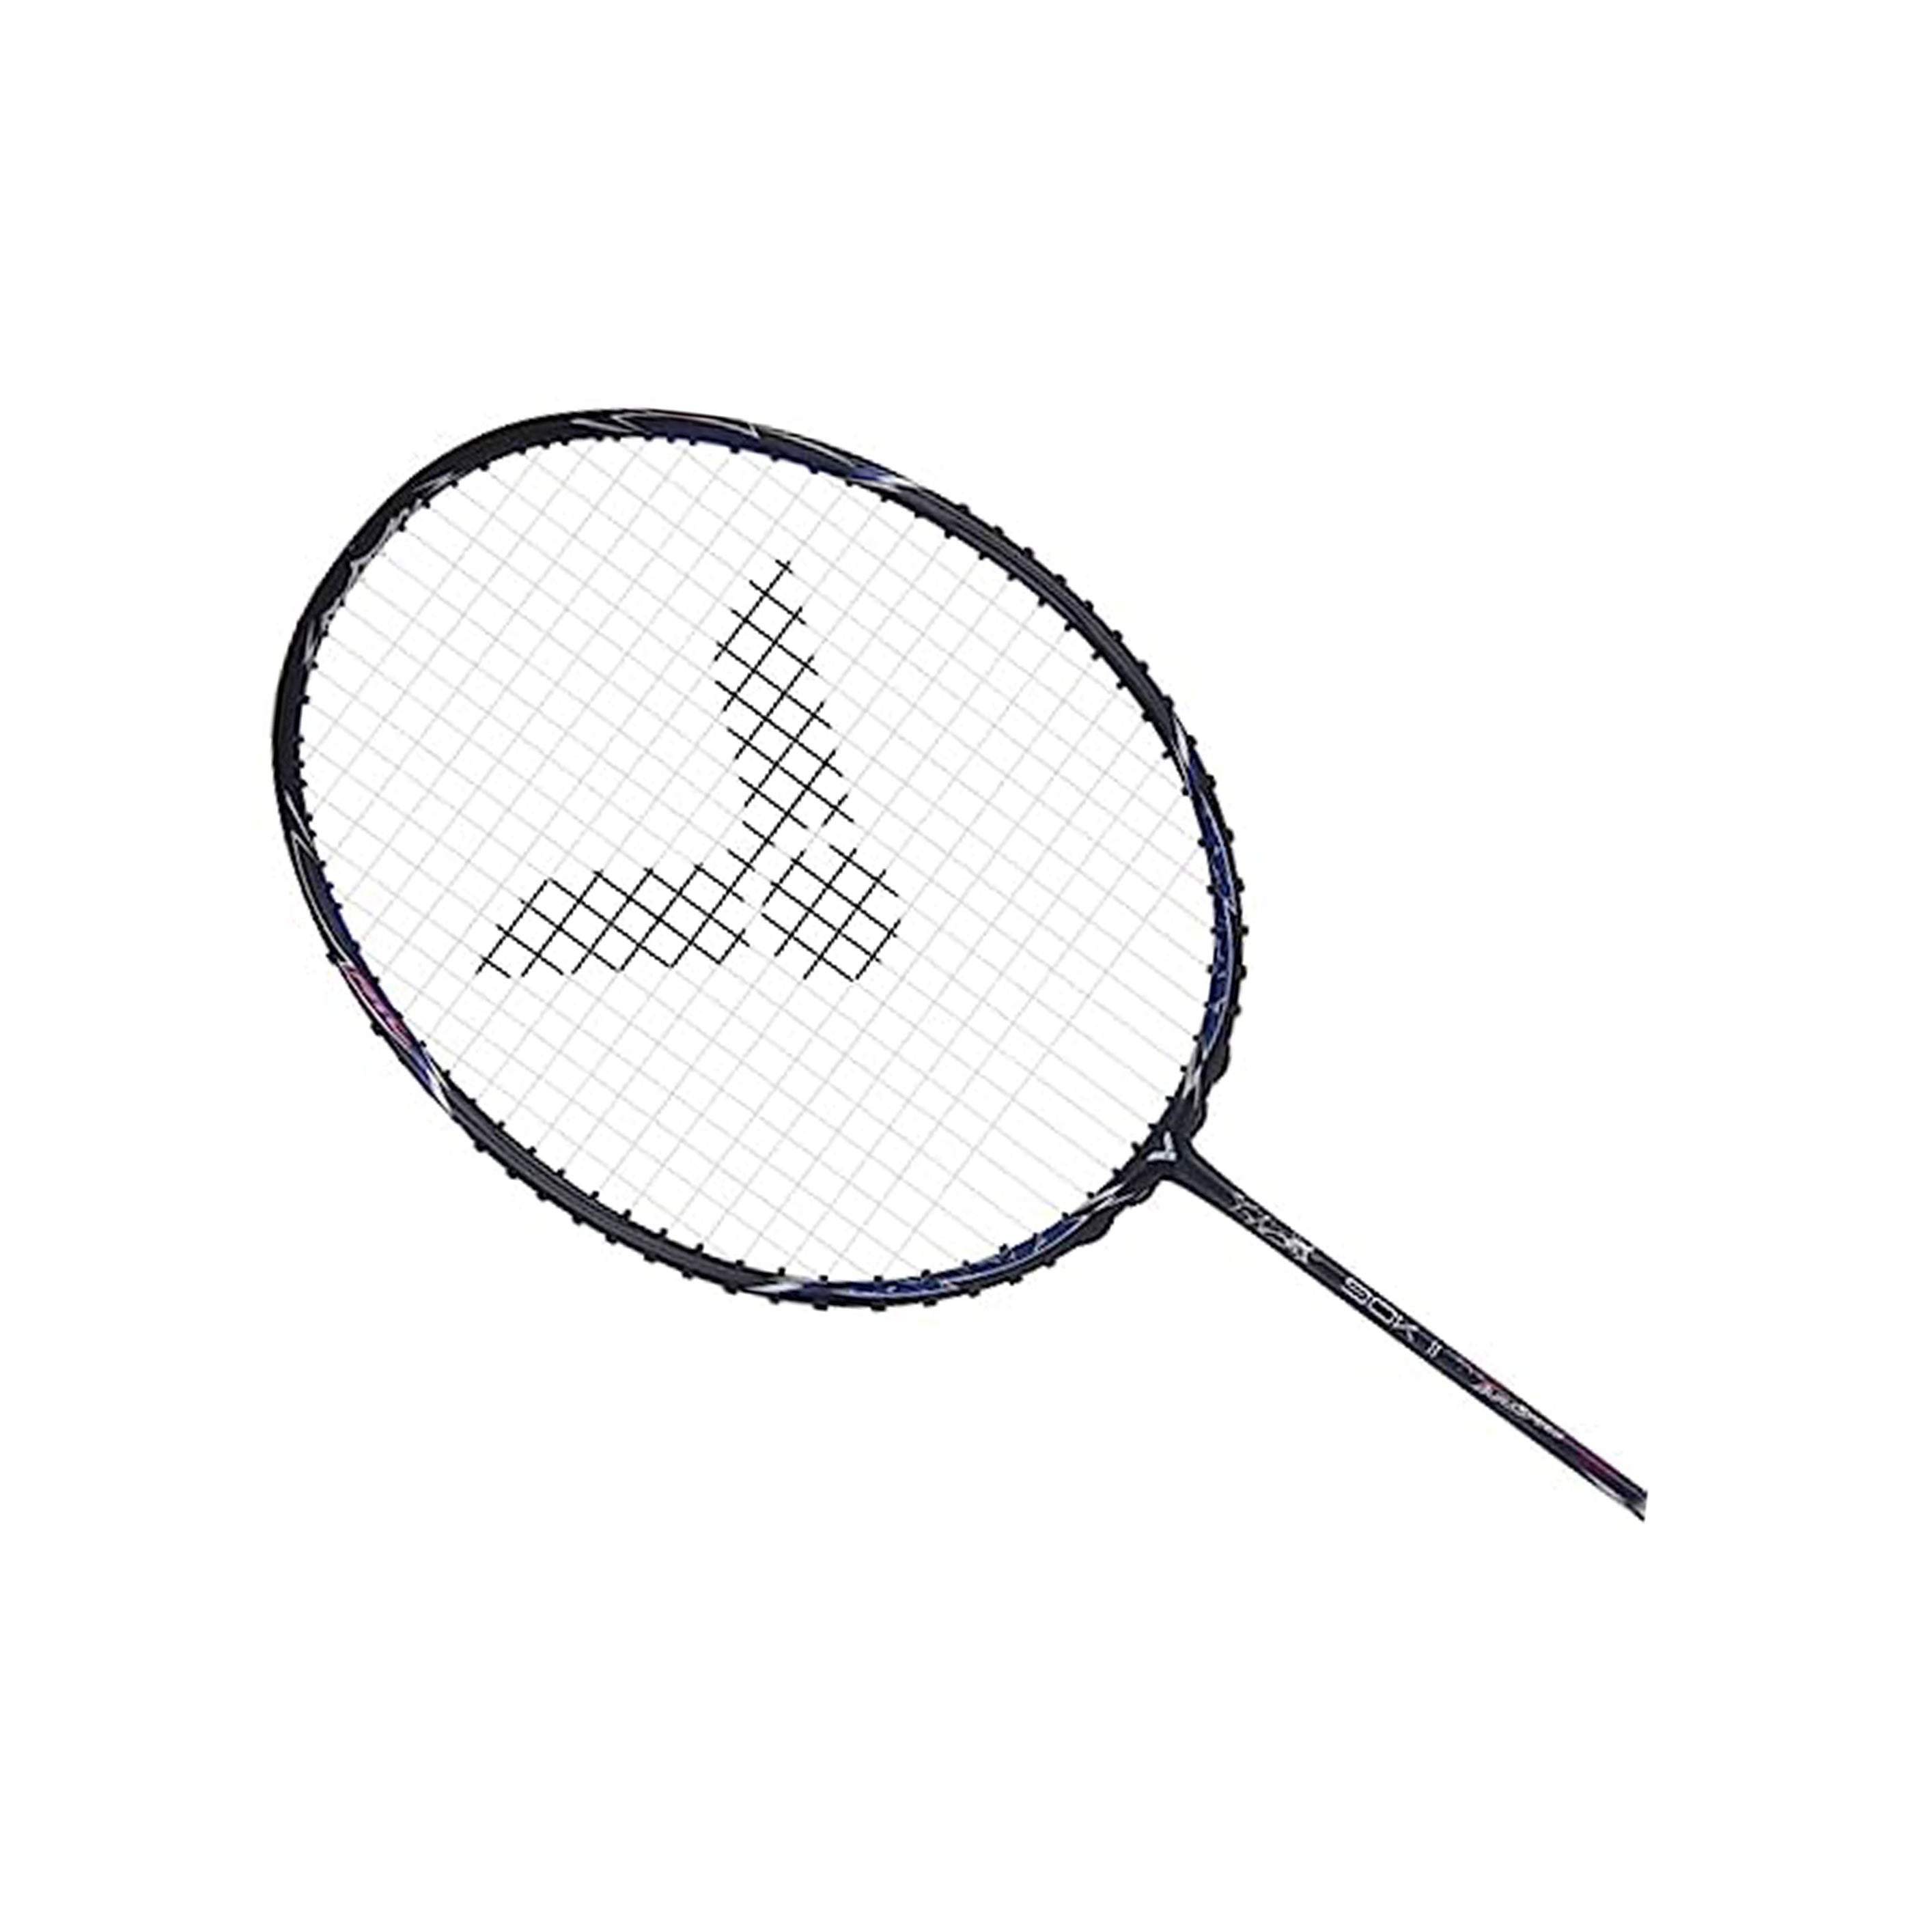 Badminton racket, Badminton racquet, durable racket, graphite racket, even balance, head heavy racket, head light racket, 3u racket, 5u racket, 6u racket, 4u racket, high tension racket, lightweight racket, victor badminton racket, unstrung racket, professional racket, beginner racket, intermediate racket, isometric racket, junior badminton racket, best badminton rackets, Shuttle bat, best smash racket. 28lbs racket, badminton racket under 1000, premium badminton racket, strung racket.